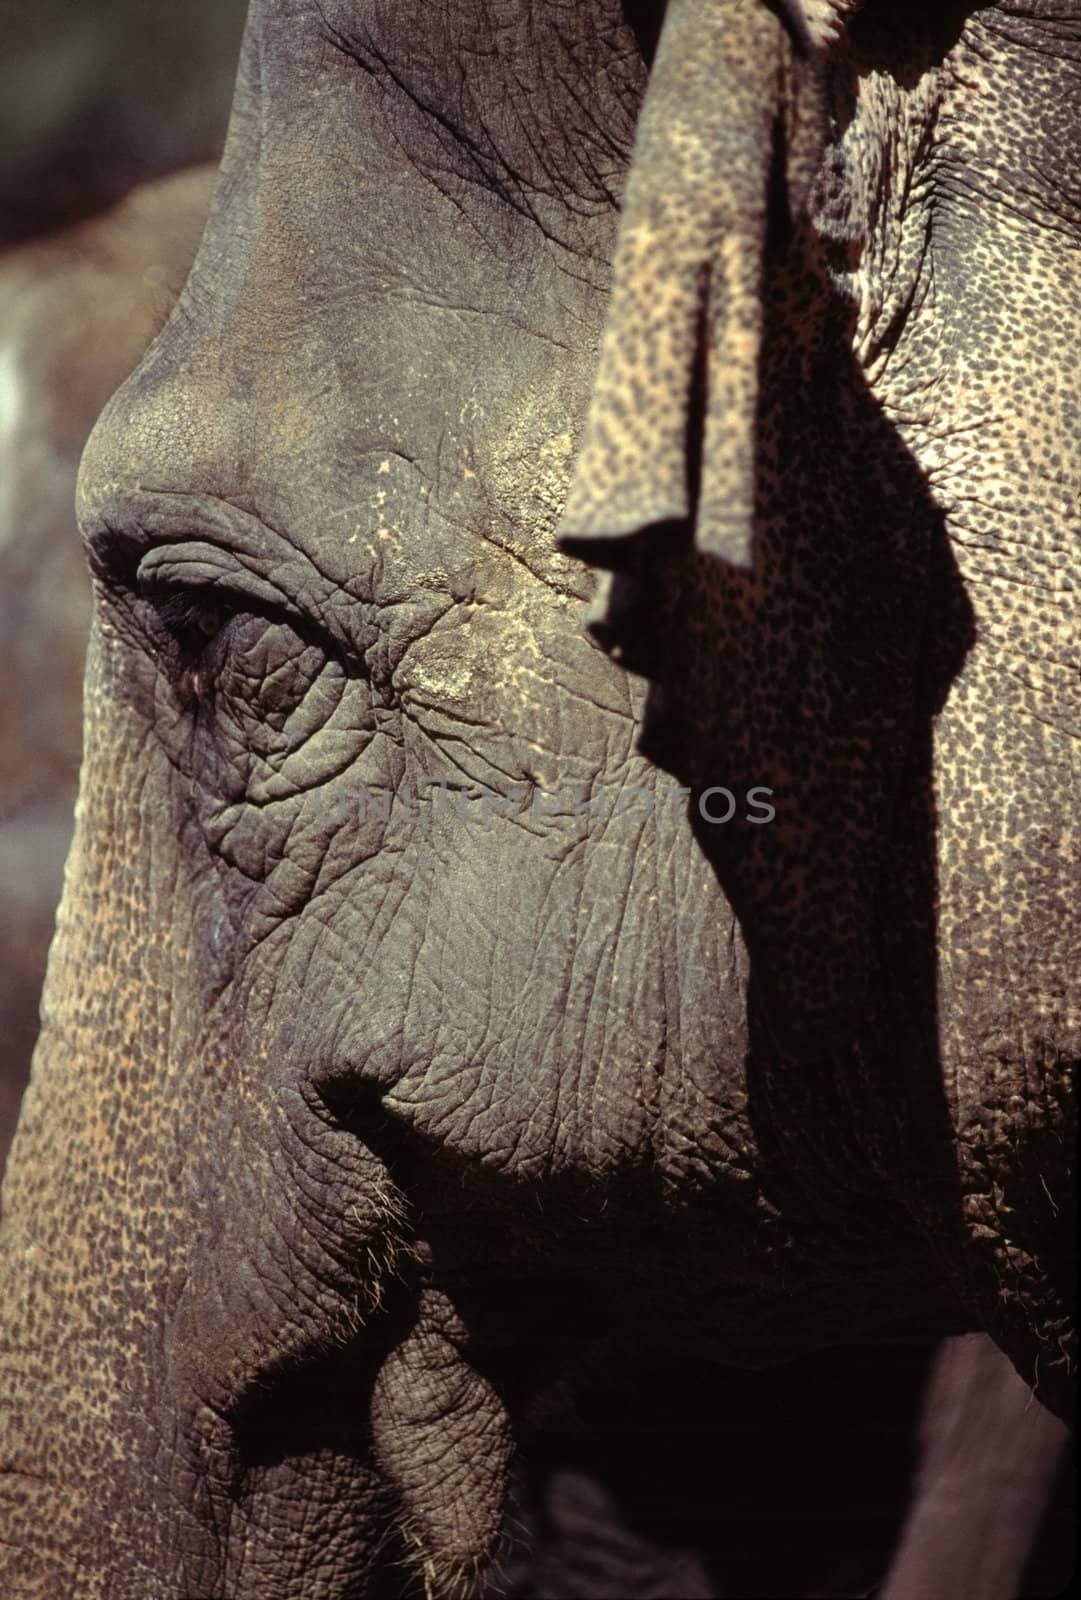 Elephant by jol66